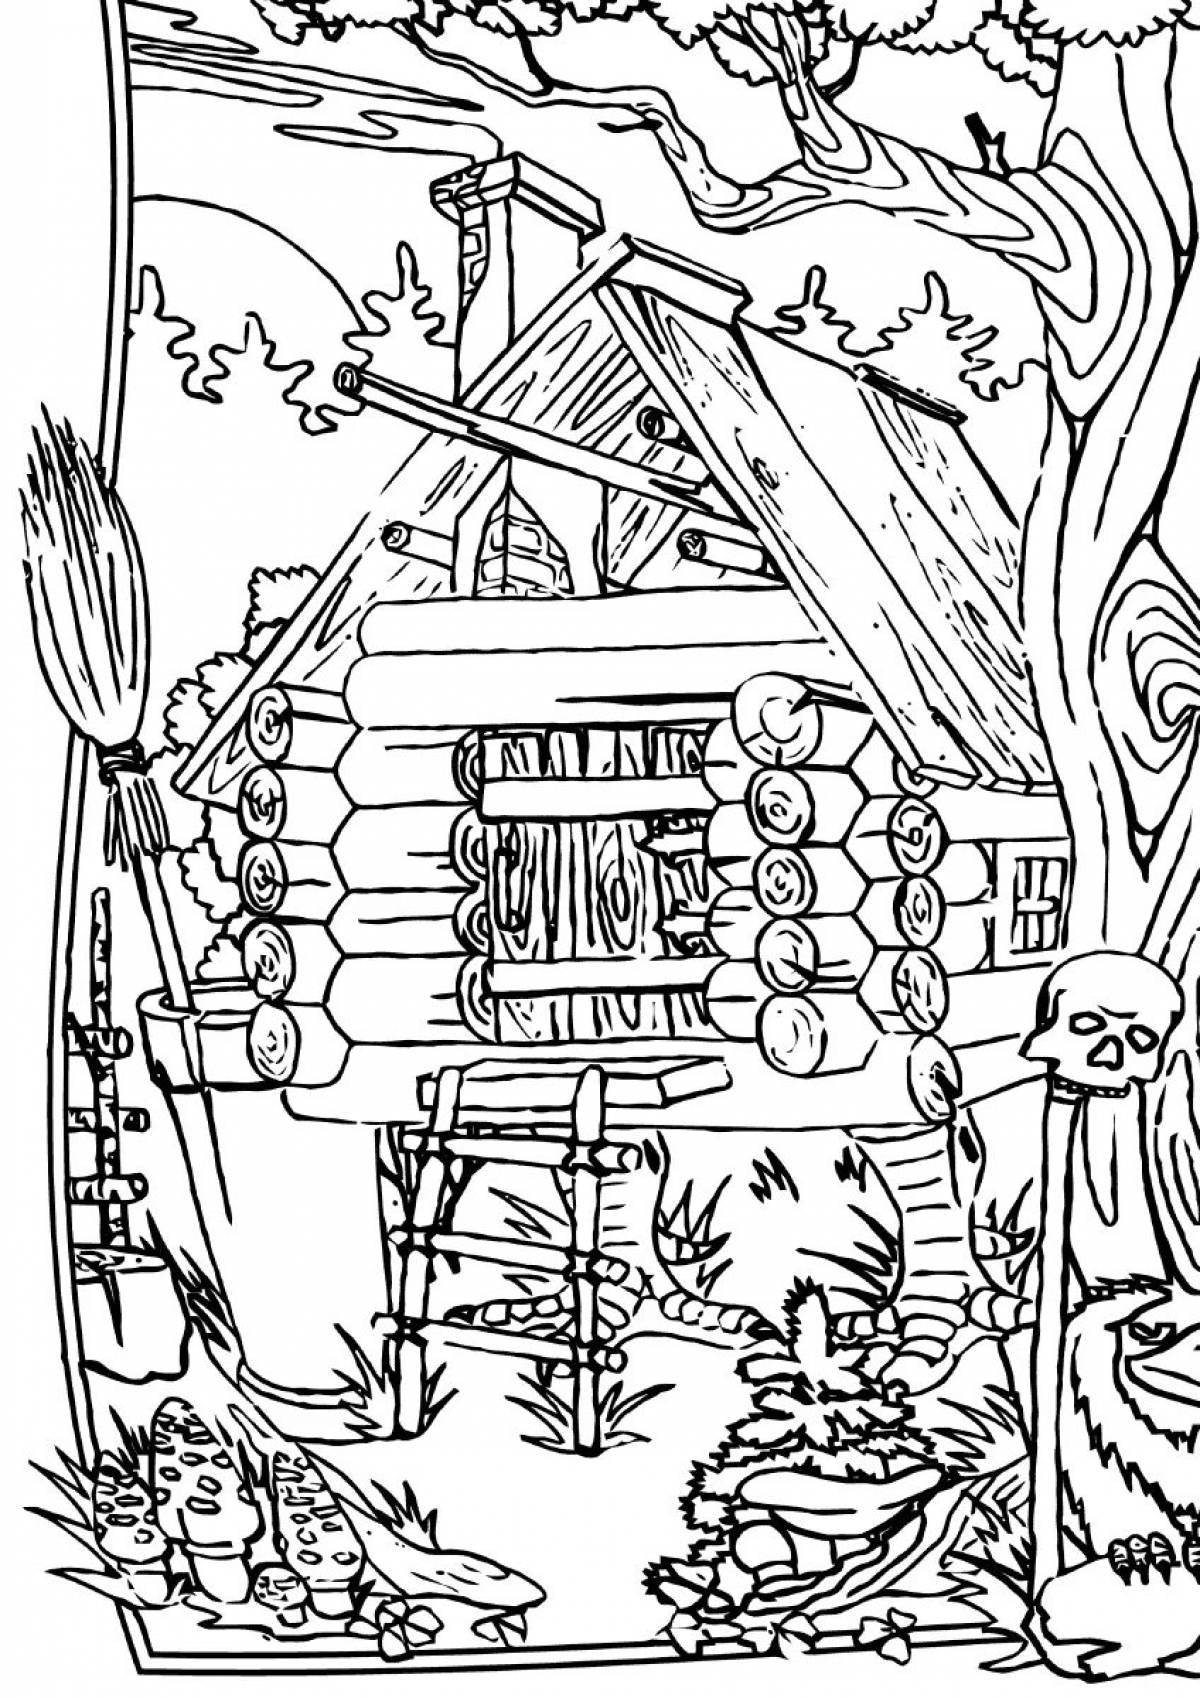 Baba yaga's grandiose house coloring page